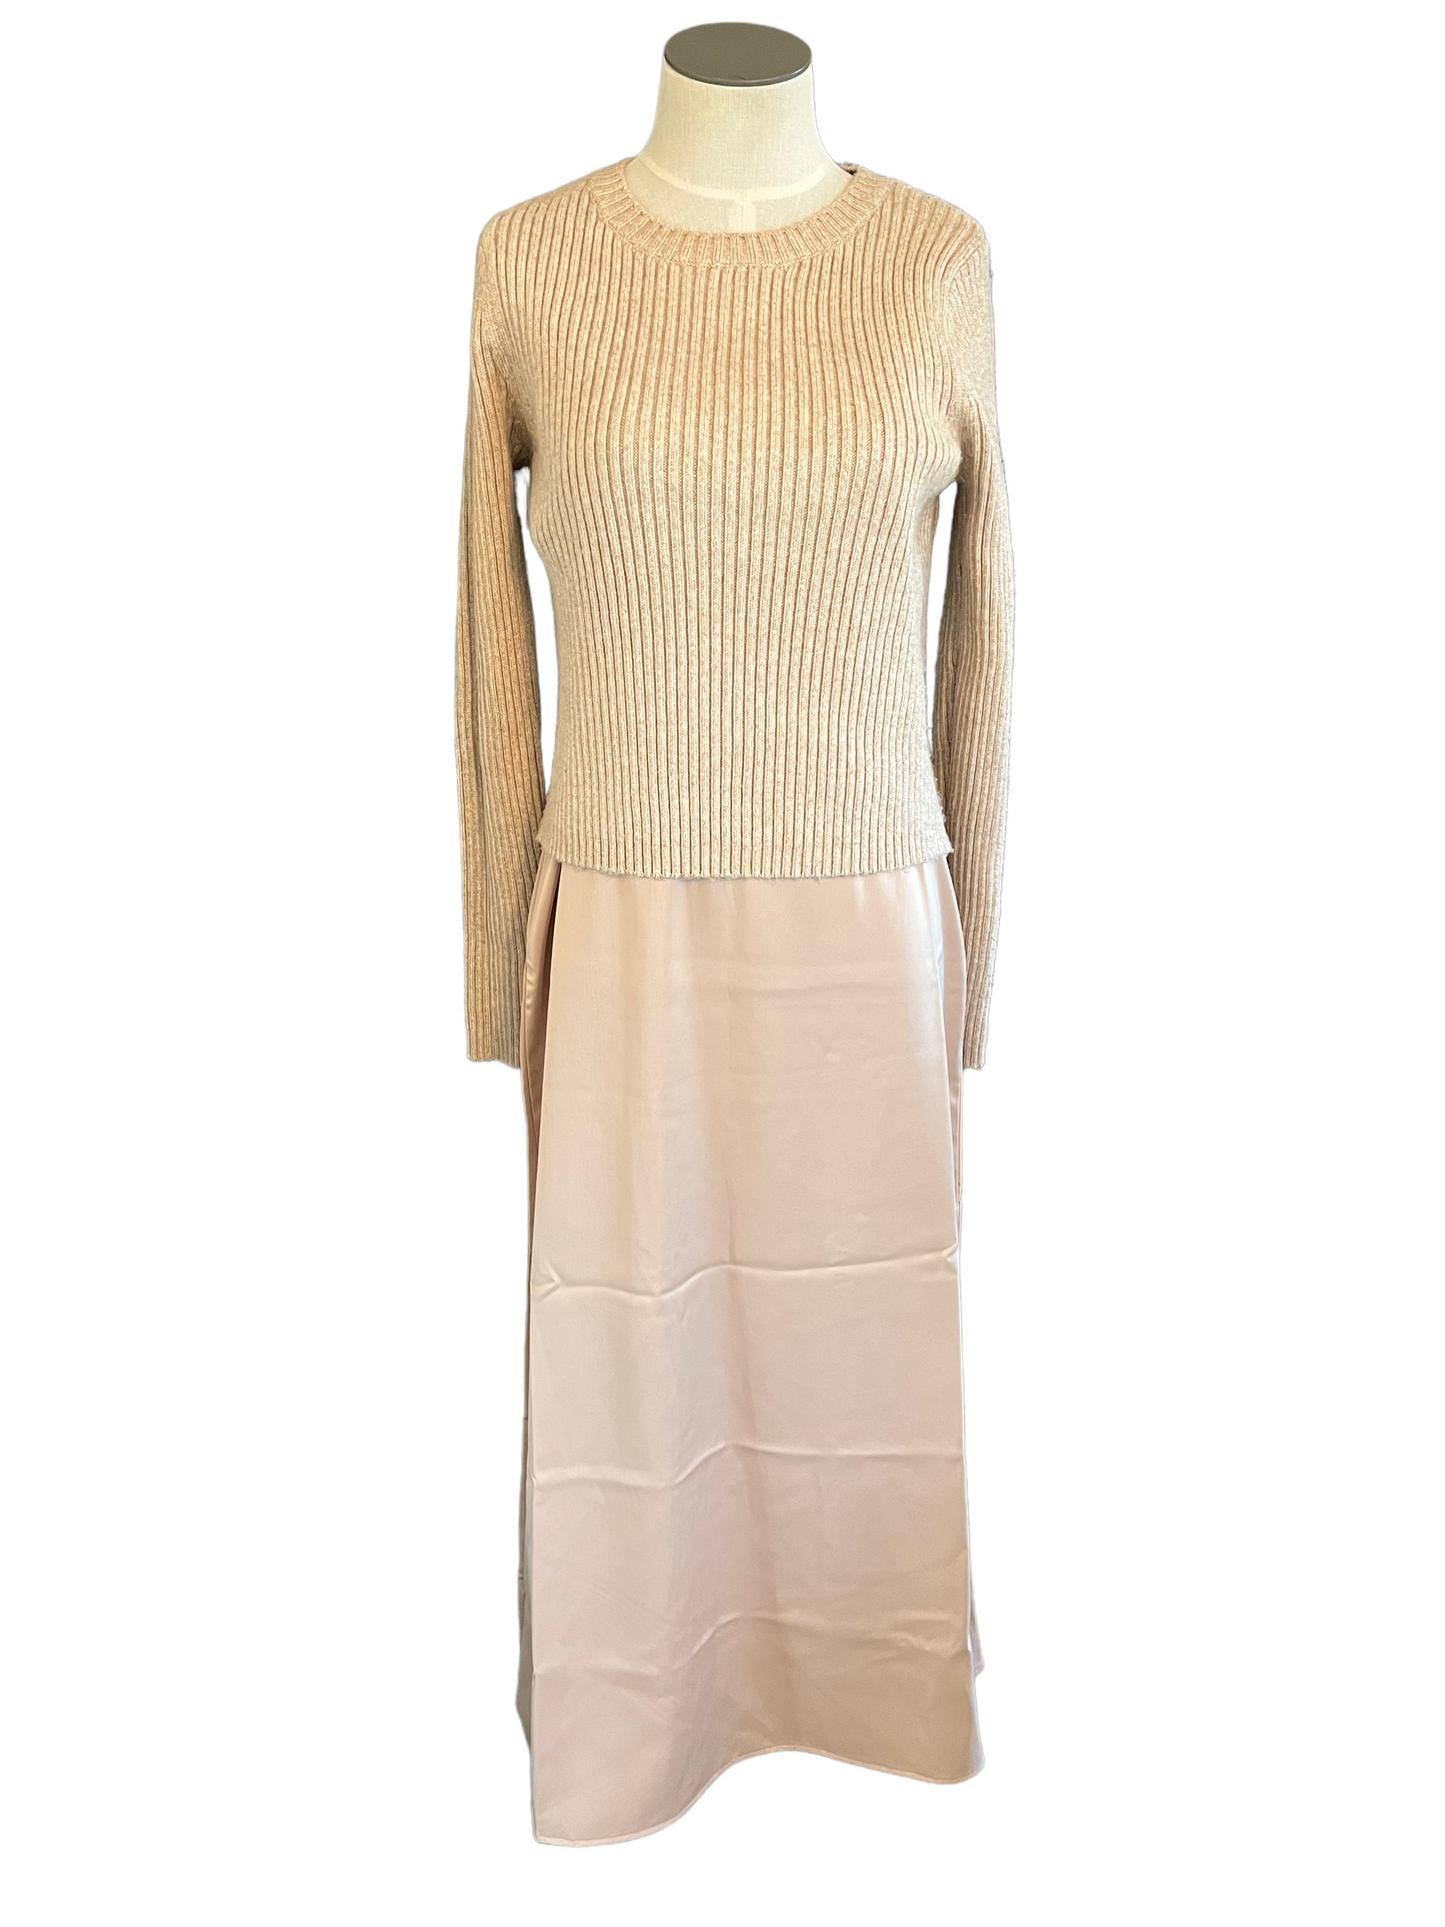 Rachel Zoe Beige Two Piece Size M Sweater Slip Dress